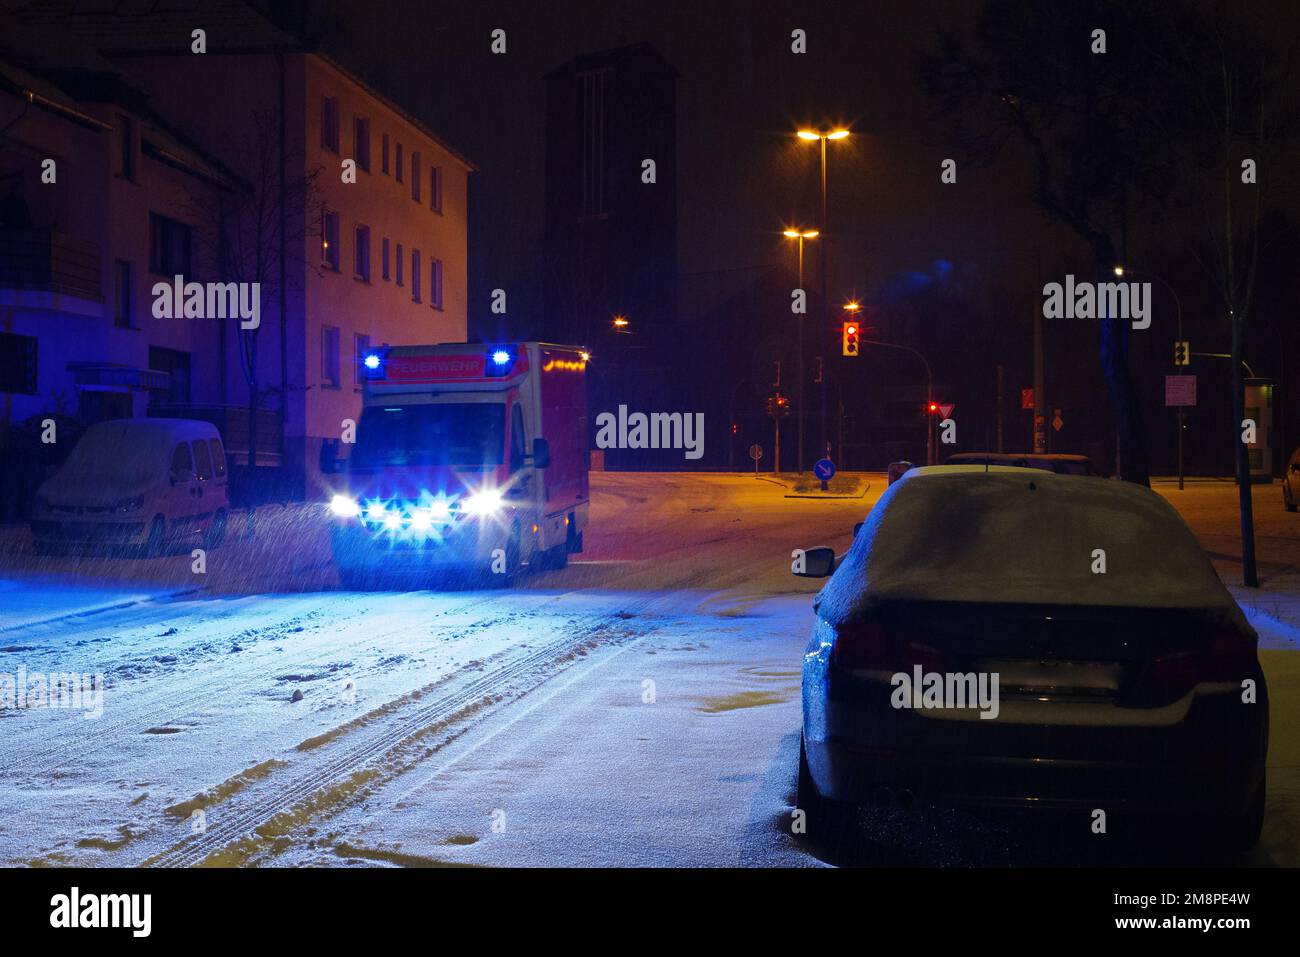 Luz azul de emergencia en el techo del coche de policía conocido como  Blaulicht en Alemania Fotografía de stock - Alamy